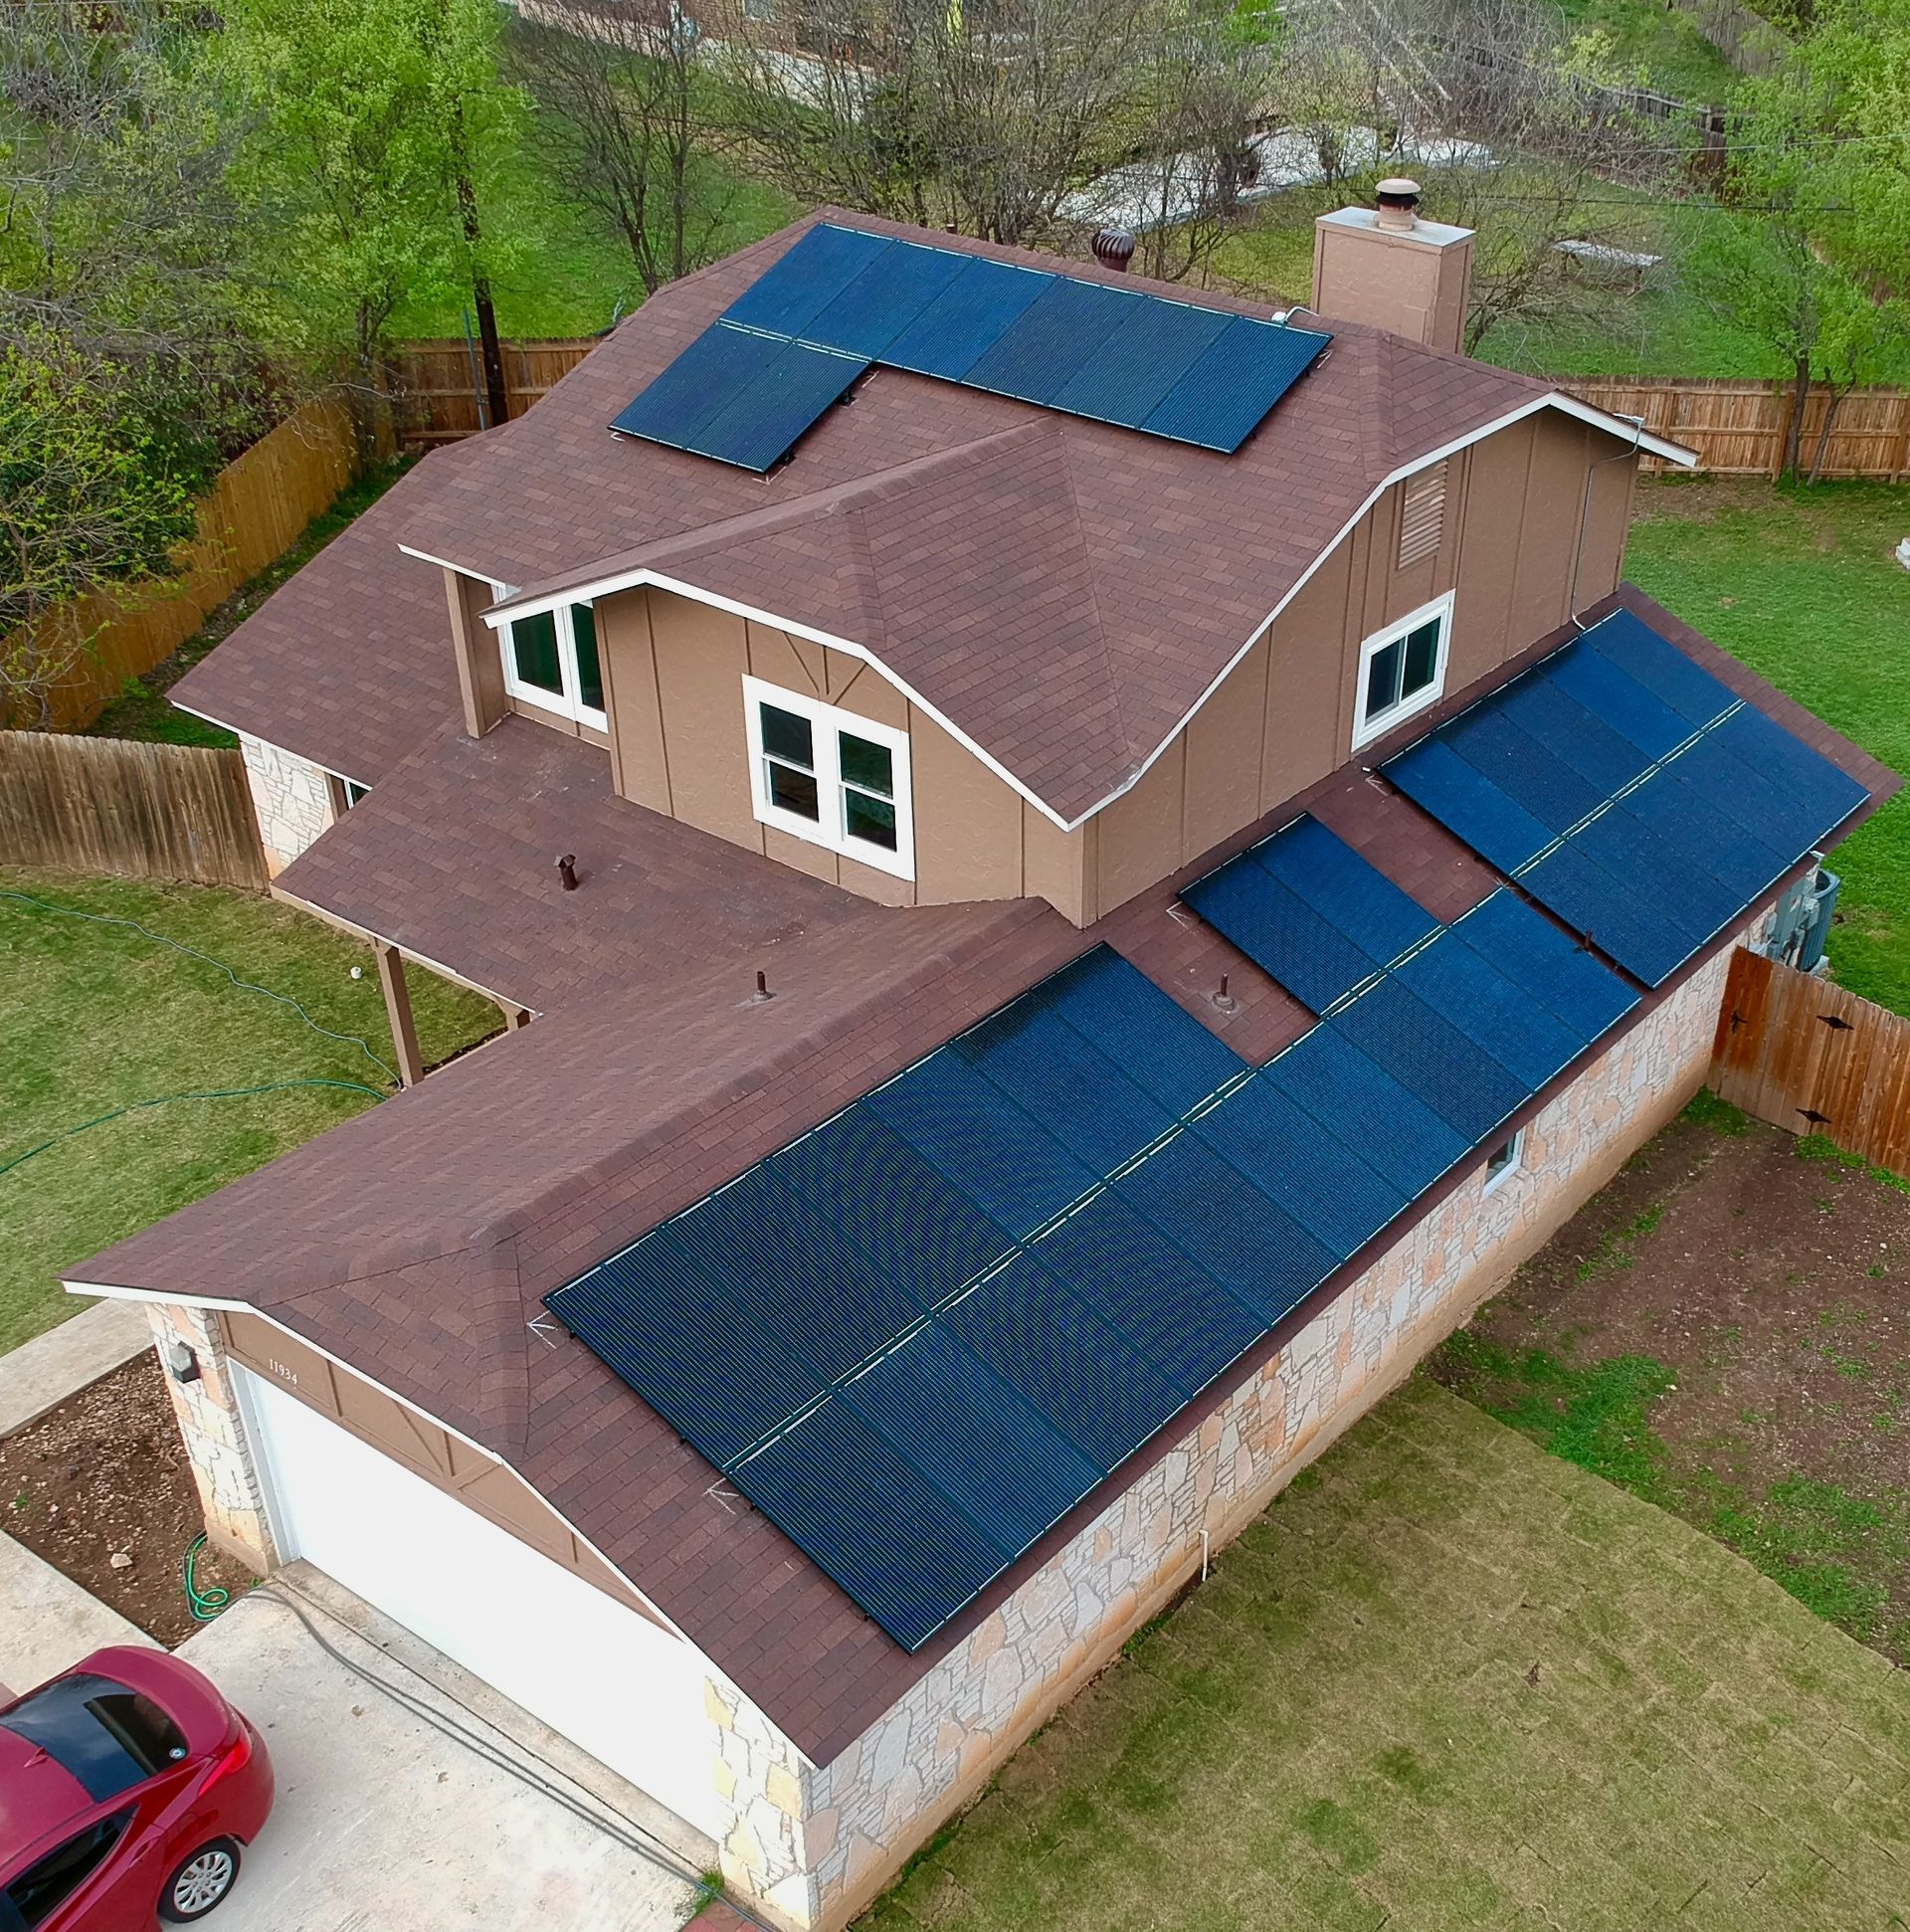 Dallas solar site has great solar contractors